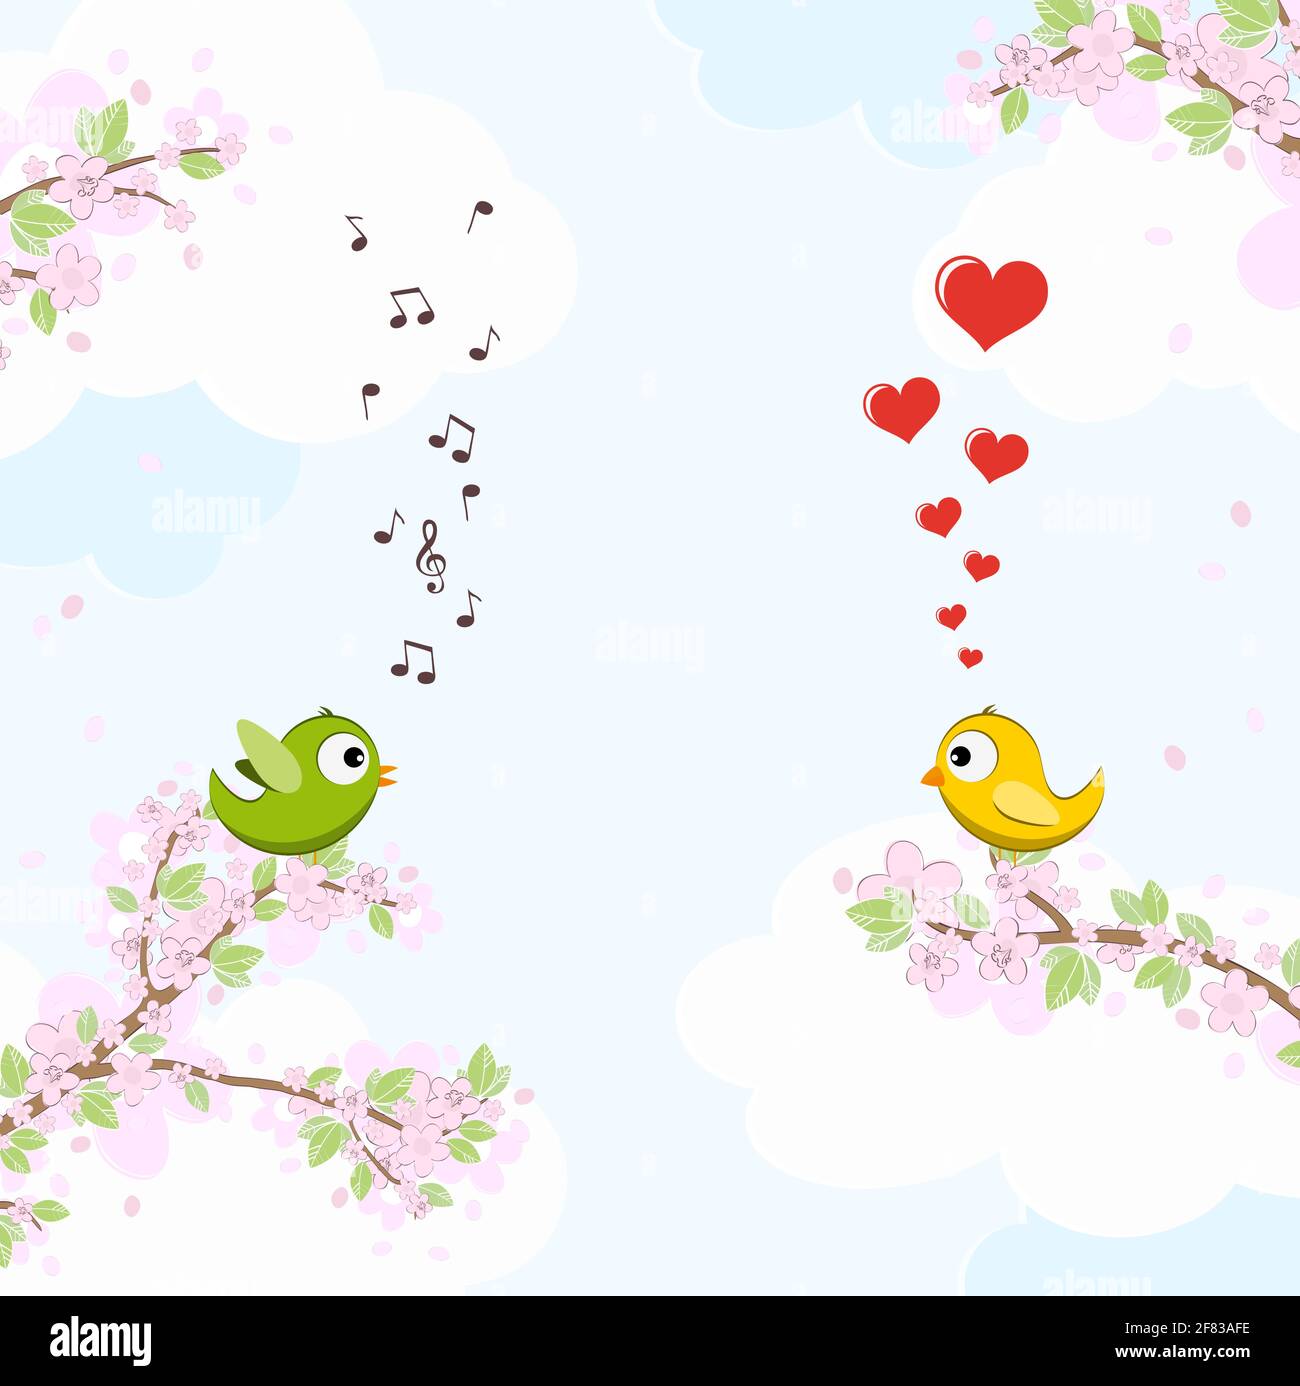 file vettoriale eps con canto di colore verde e giallo e uccelli sognanti in amore seduto su rami con fiori e foglie verdi in primavera, ba Illustrazione Vettoriale